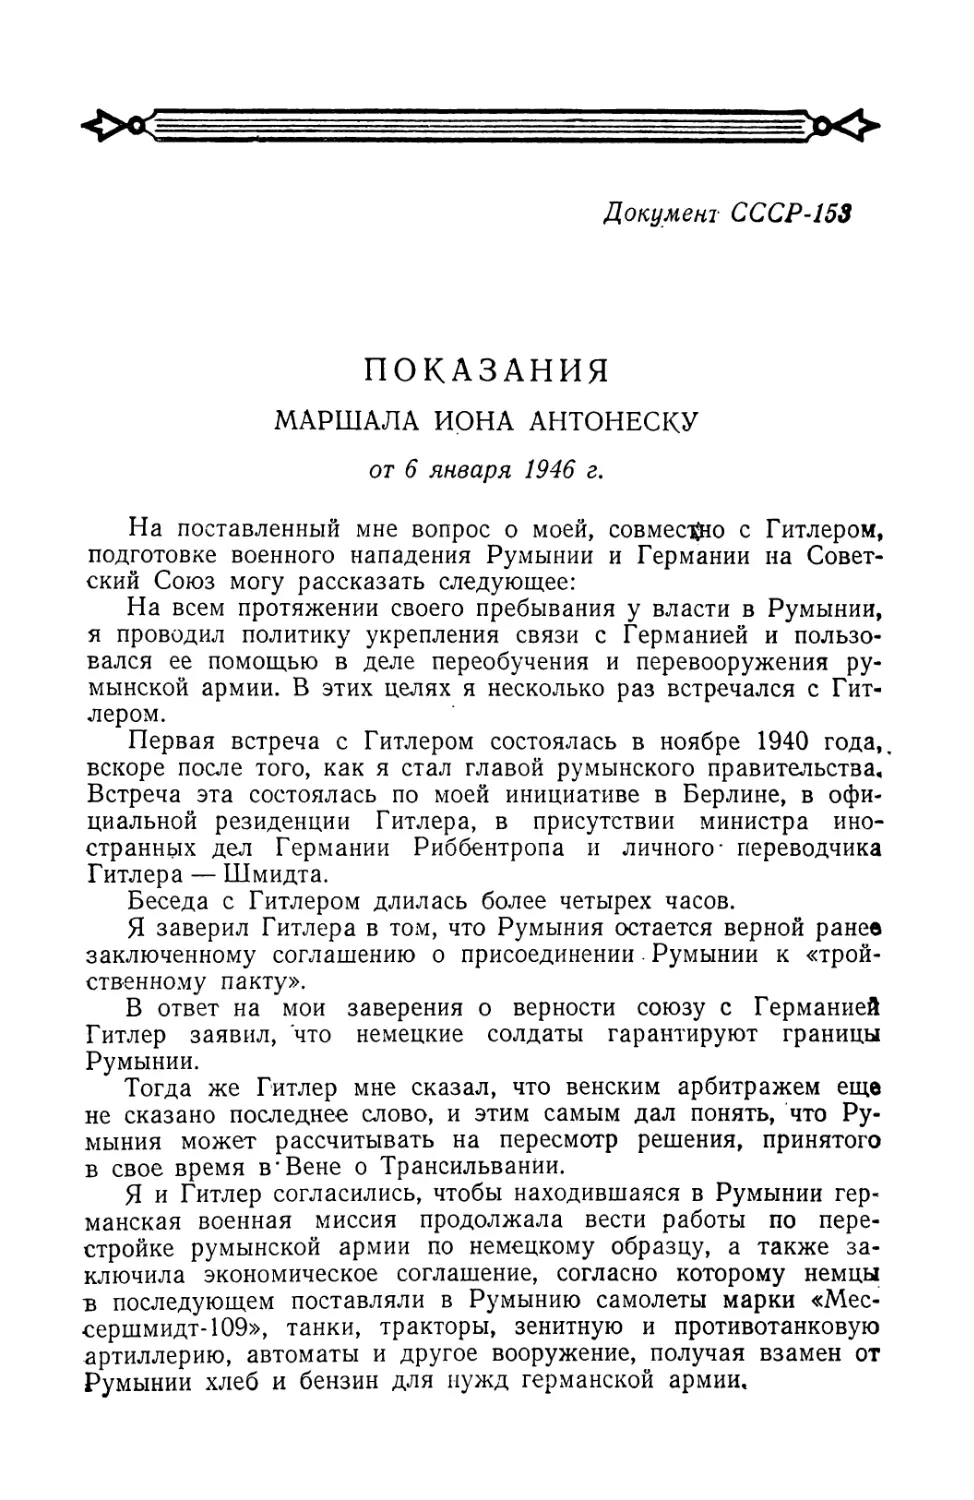 Показания маршала Иона Антонеску от 6 января 1946 г.